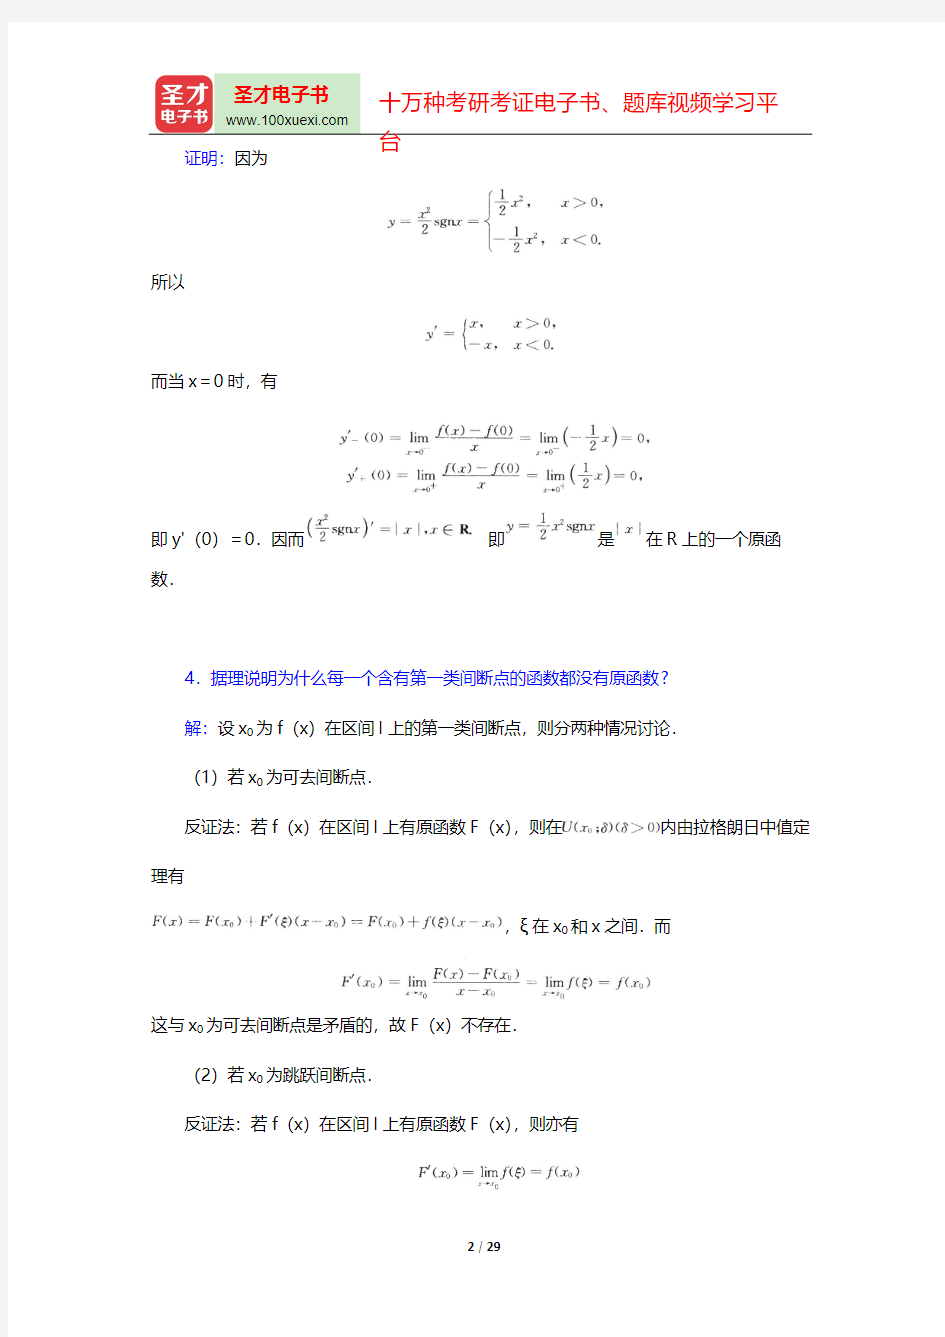 华东师范大学数学系《数学分析》(第4版)(上册)(课后习题  不定积分)【圣才出品】